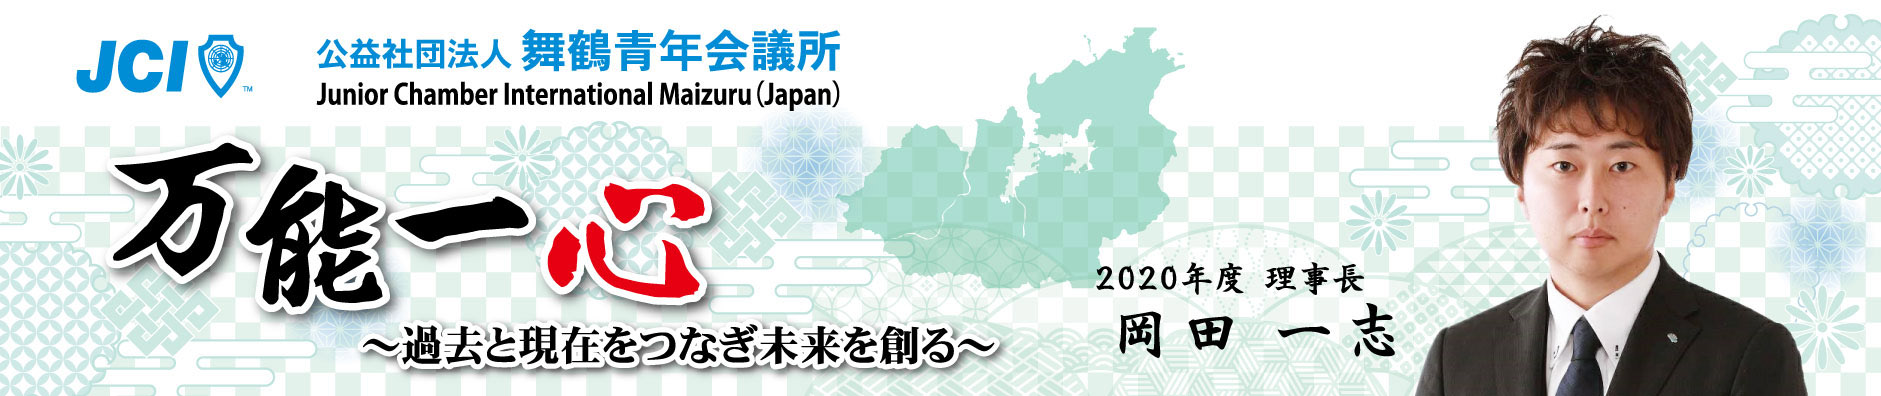 公益社団法人 舞鶴青年会議所 2020年度ホームページ